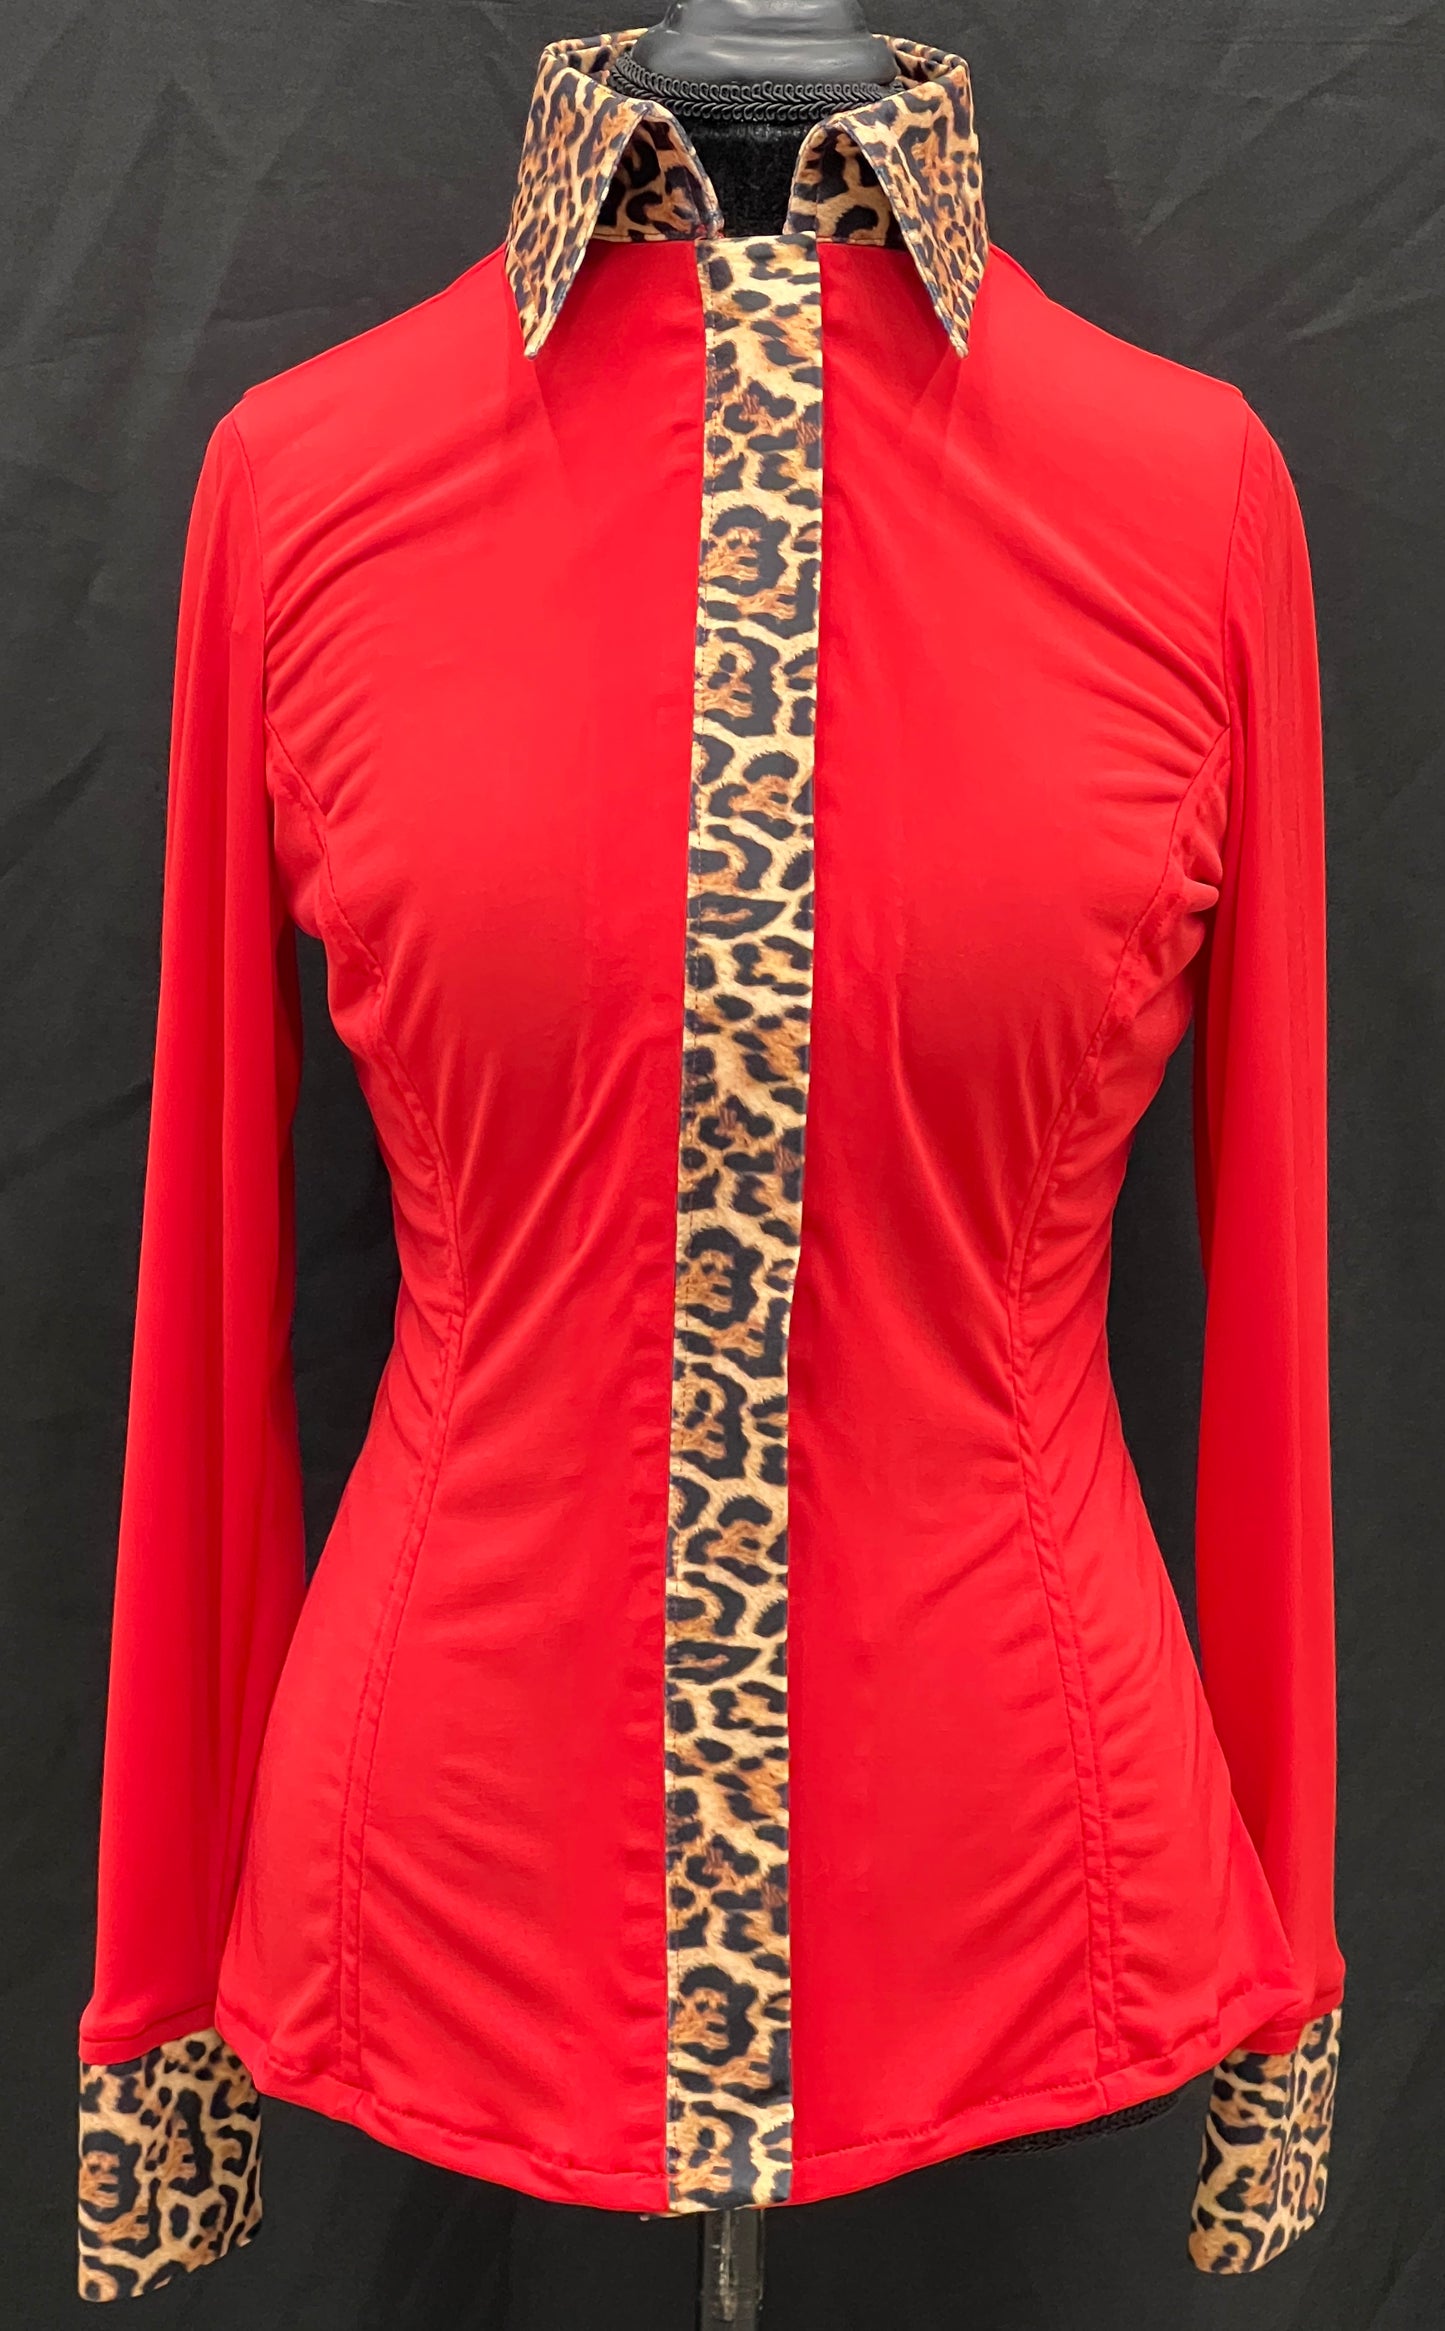 Red Leopard Hidden Zipper Light Weight Fitted Shirt